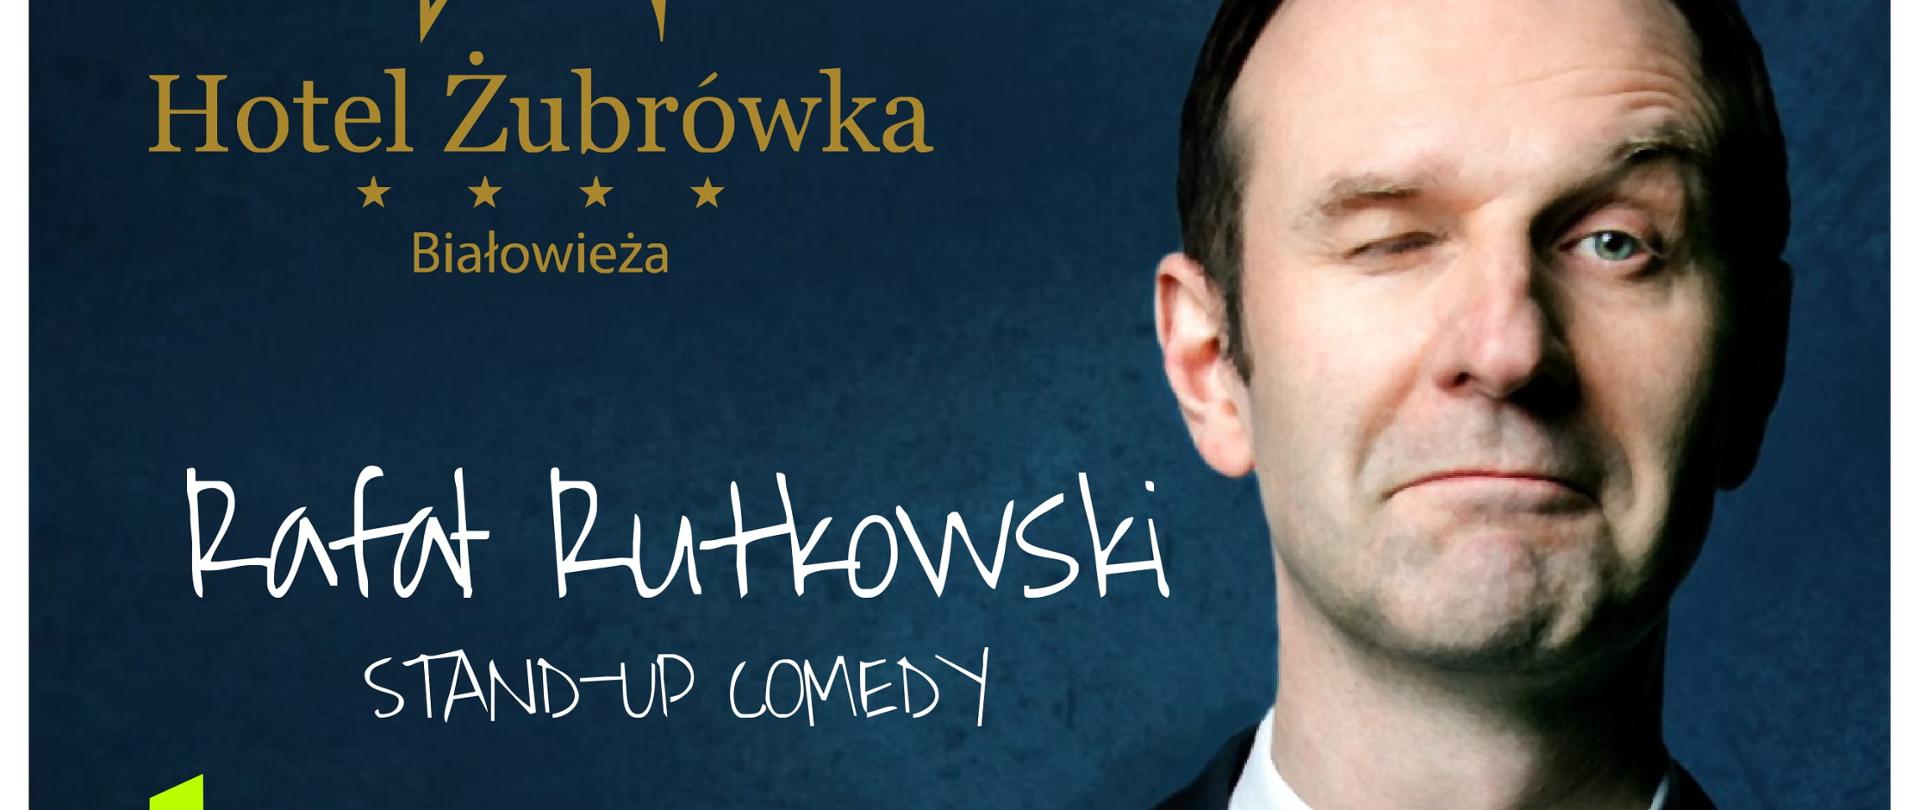 Plakat promujący wydarzenie: na niebieskim tle zdjęcie Rafała Rutkowskiego, informacje organizacyjne, umieszczone w artykule oraz logo Hotelu Żubrówka